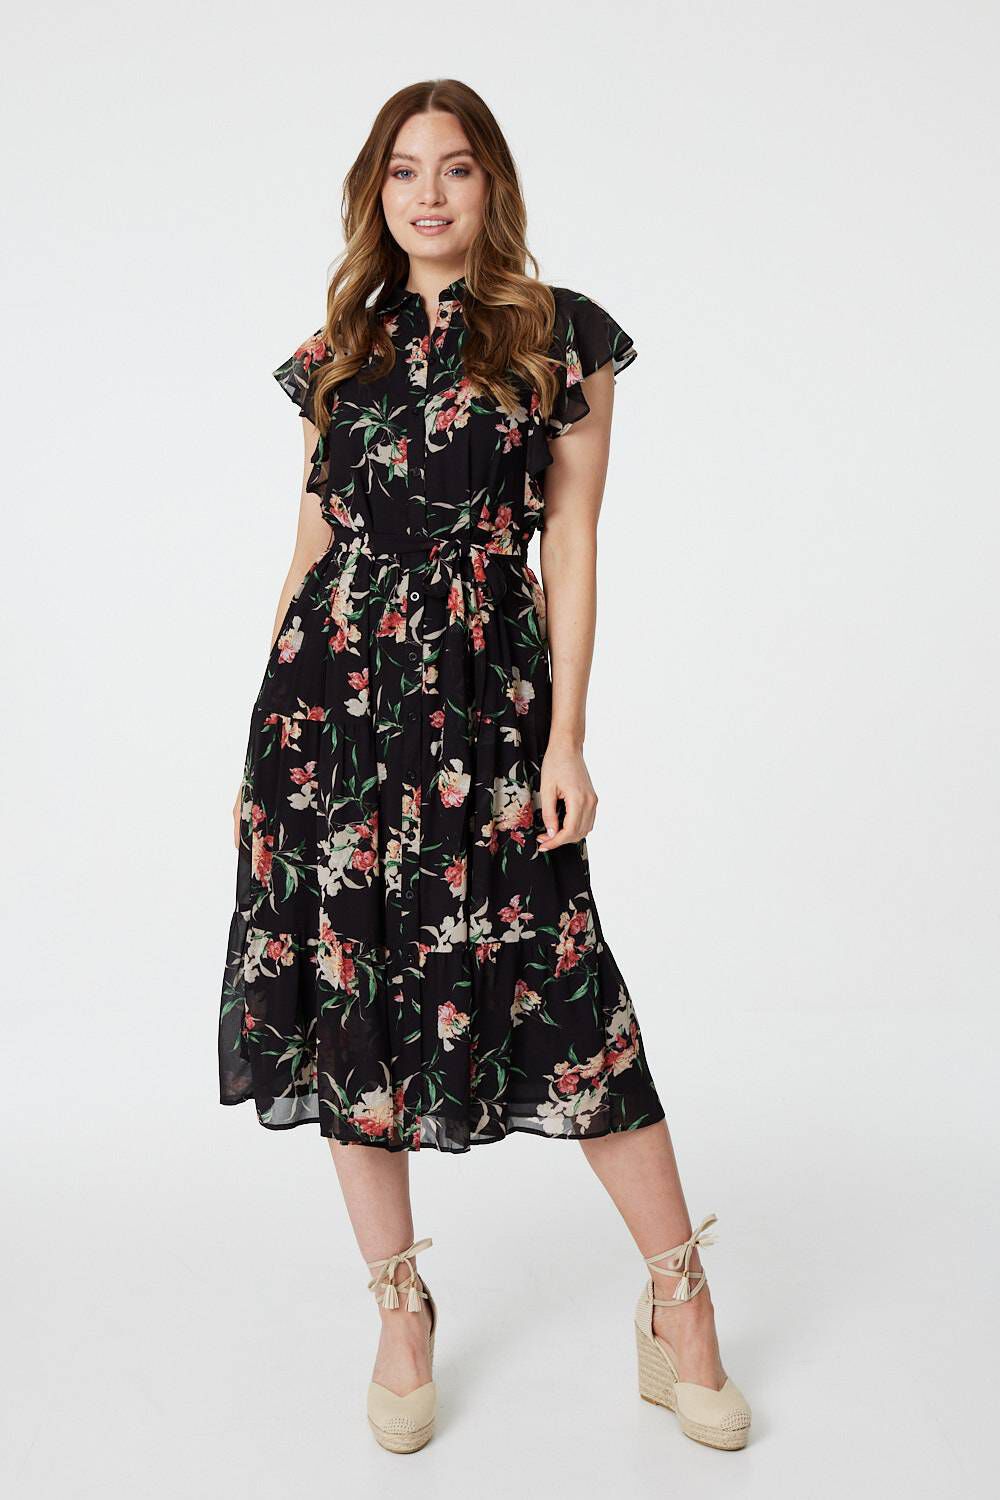 Izabel London Black - Floral Angel Sleeve Shirt Dress, Size: 16